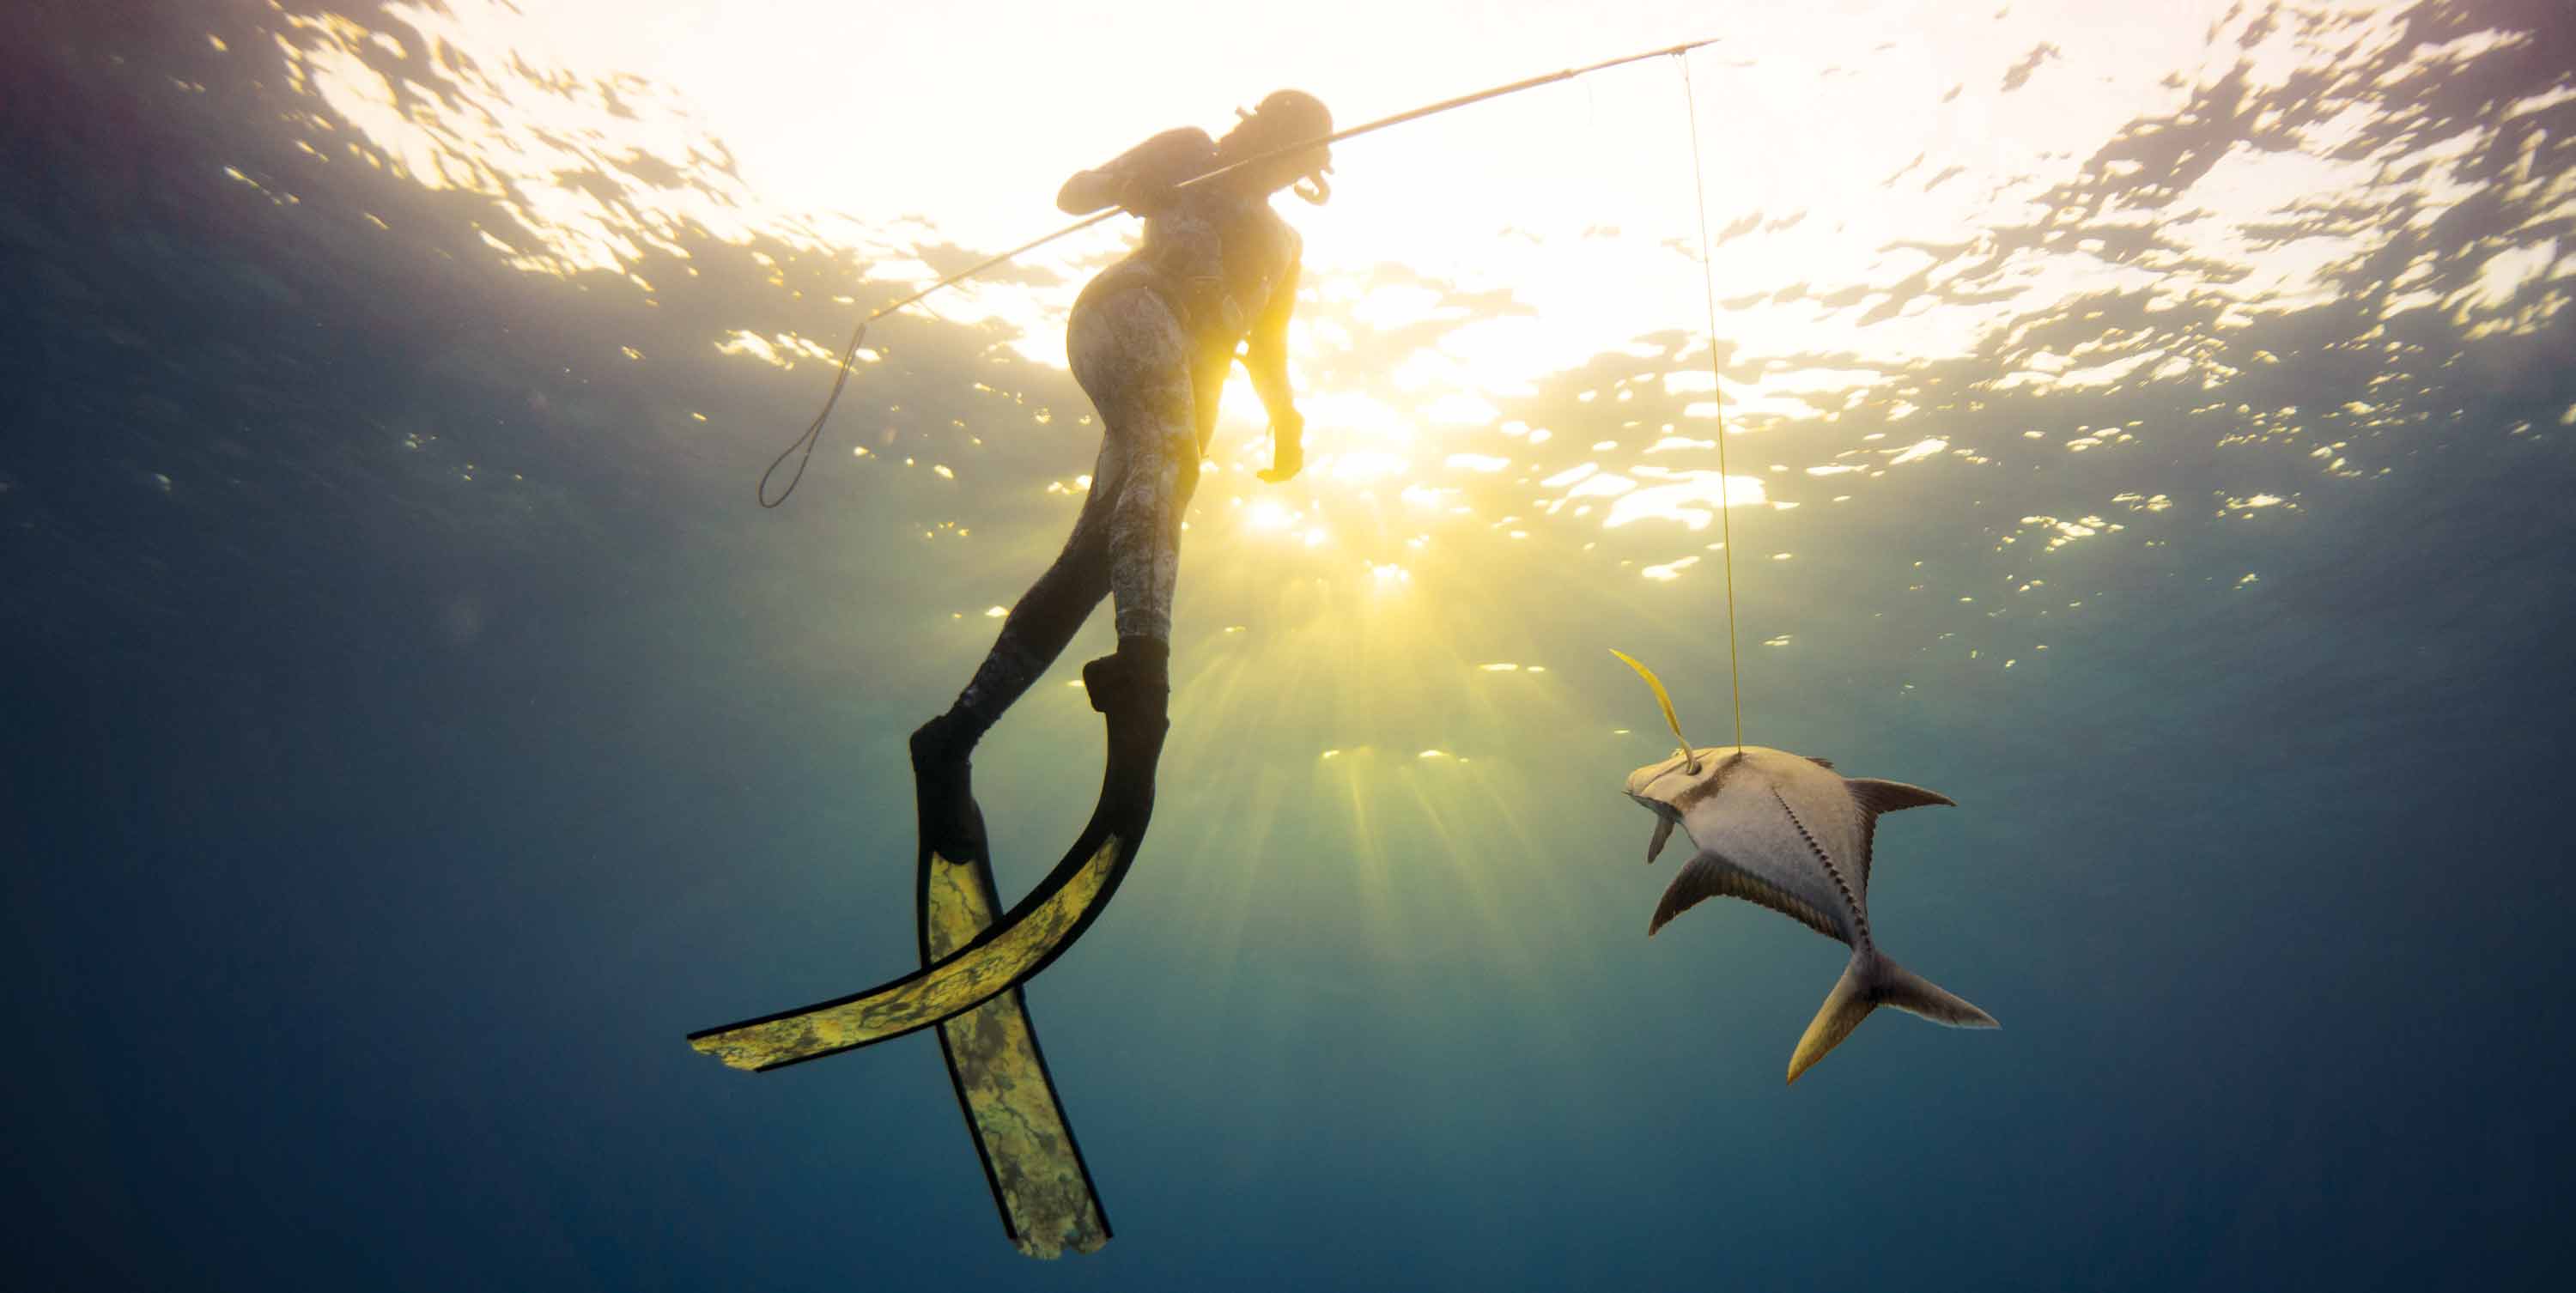 Spearfishing For Beginners: Pole Spear Basics - Adreno - Ocean